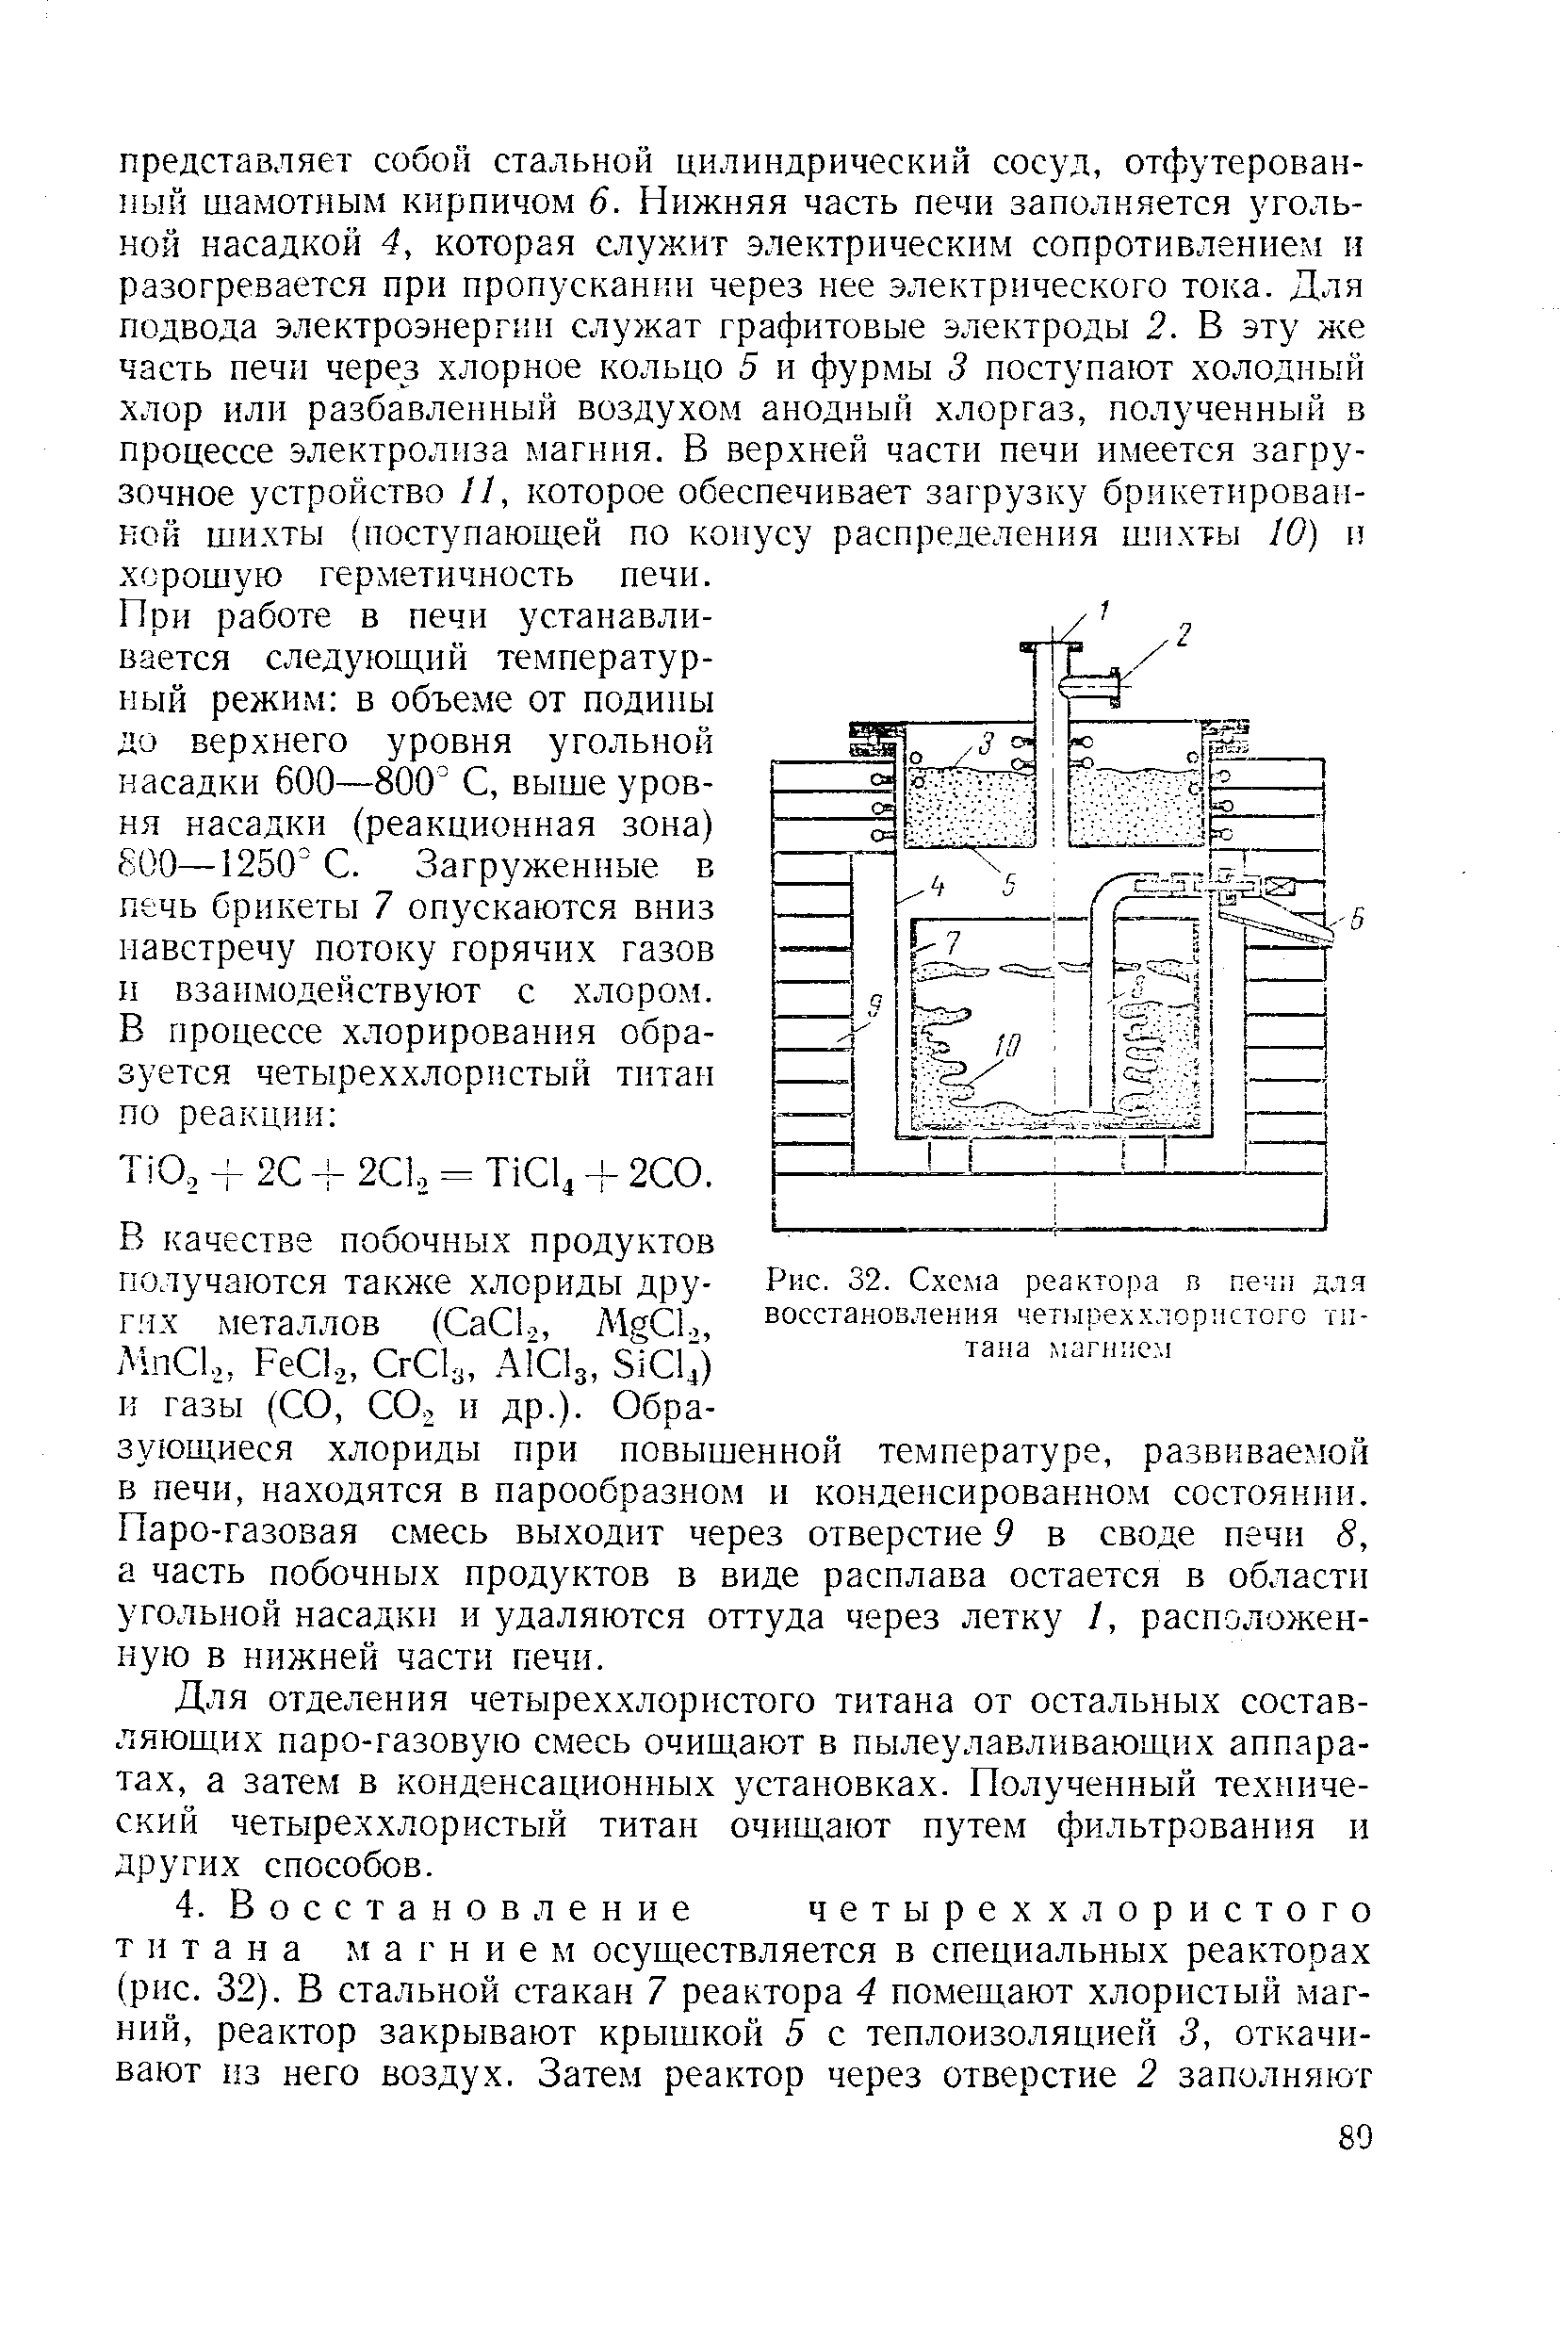 Рис. 32. Схема реактора в печи для восстановления четыреххлористого тп-тана маглие.м
